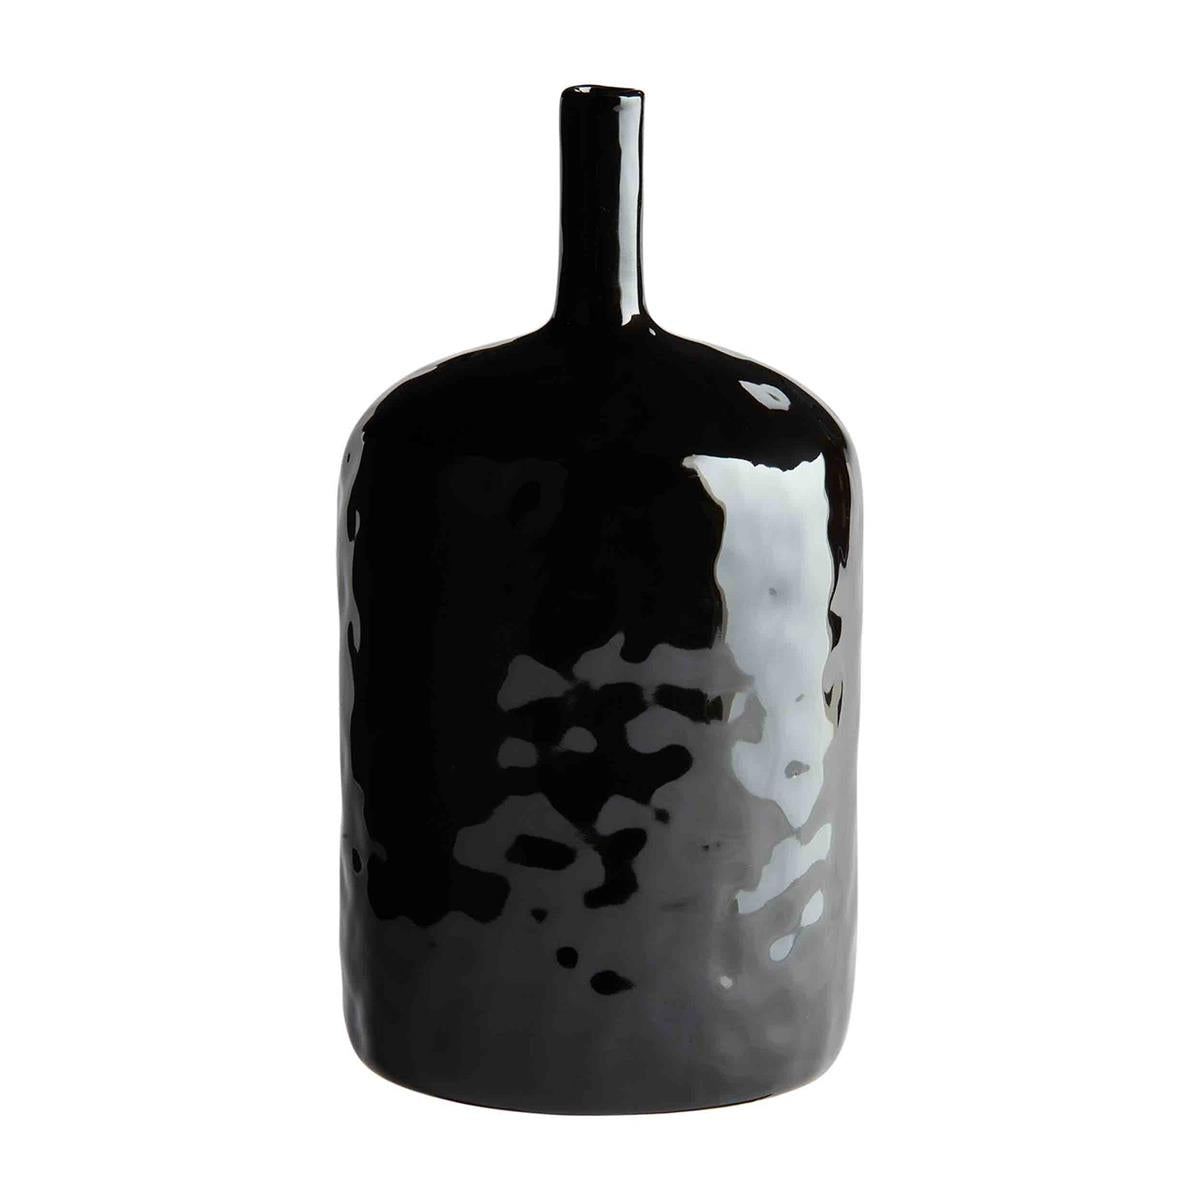 Glazed Black Stoneware Vase - Large